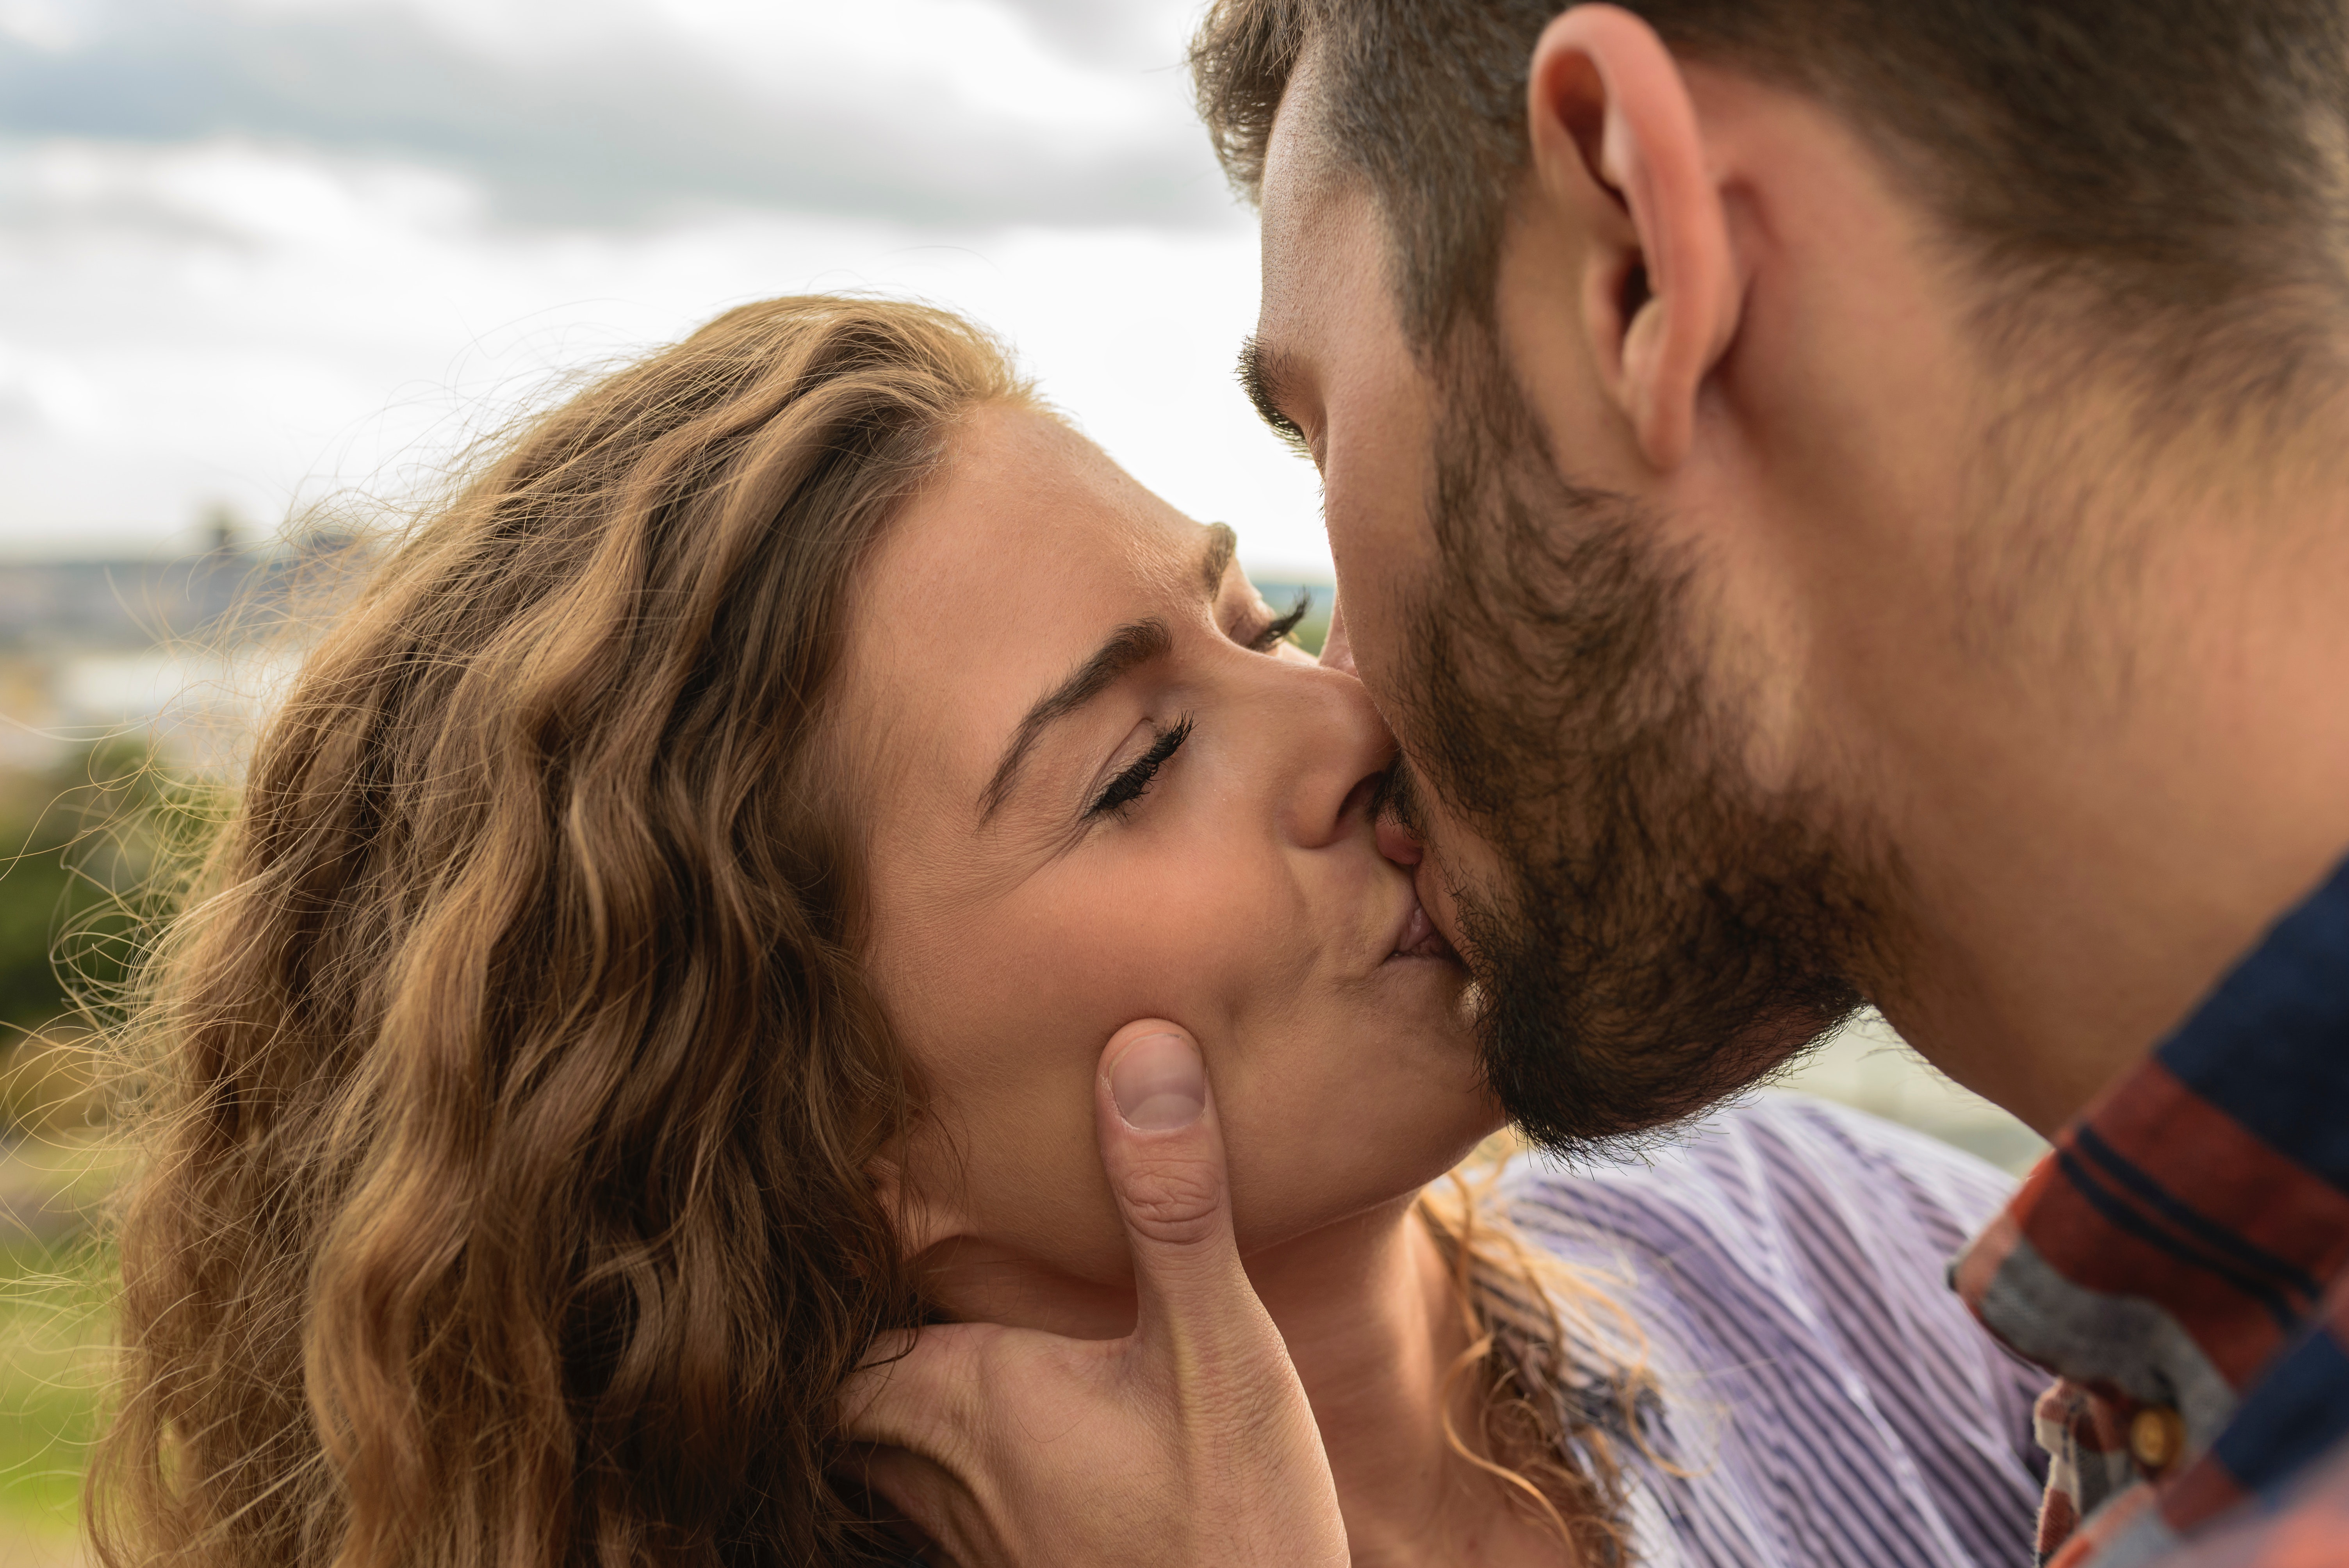 100+ Amazing Kiss Photos · Pexels · Free Stock Photos